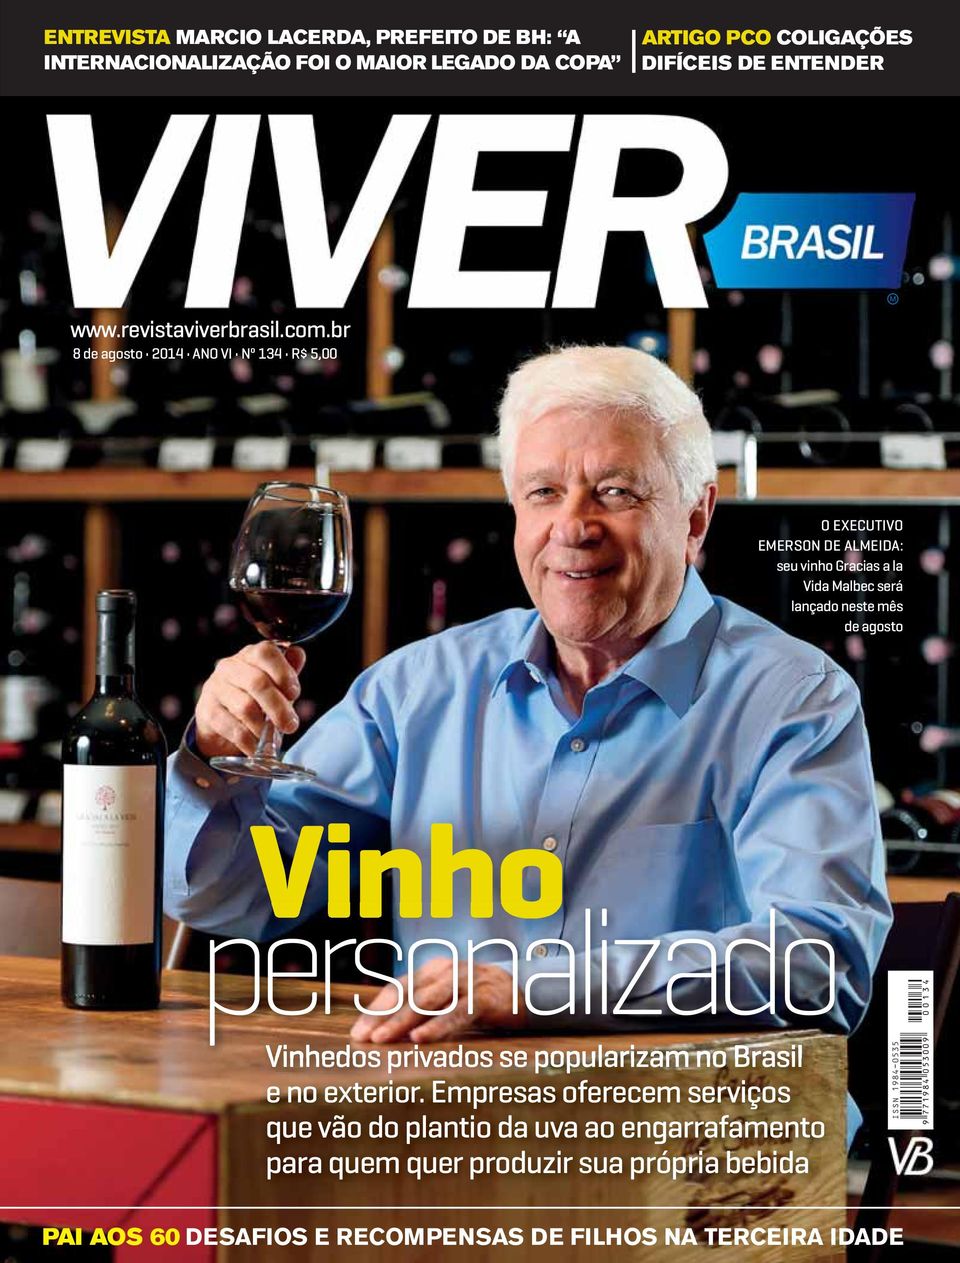 br seu vinho Gracias a la Vida Malbec será lançado neste mês de agosto Vinho personalizado Vinhedos privados se popularizam no